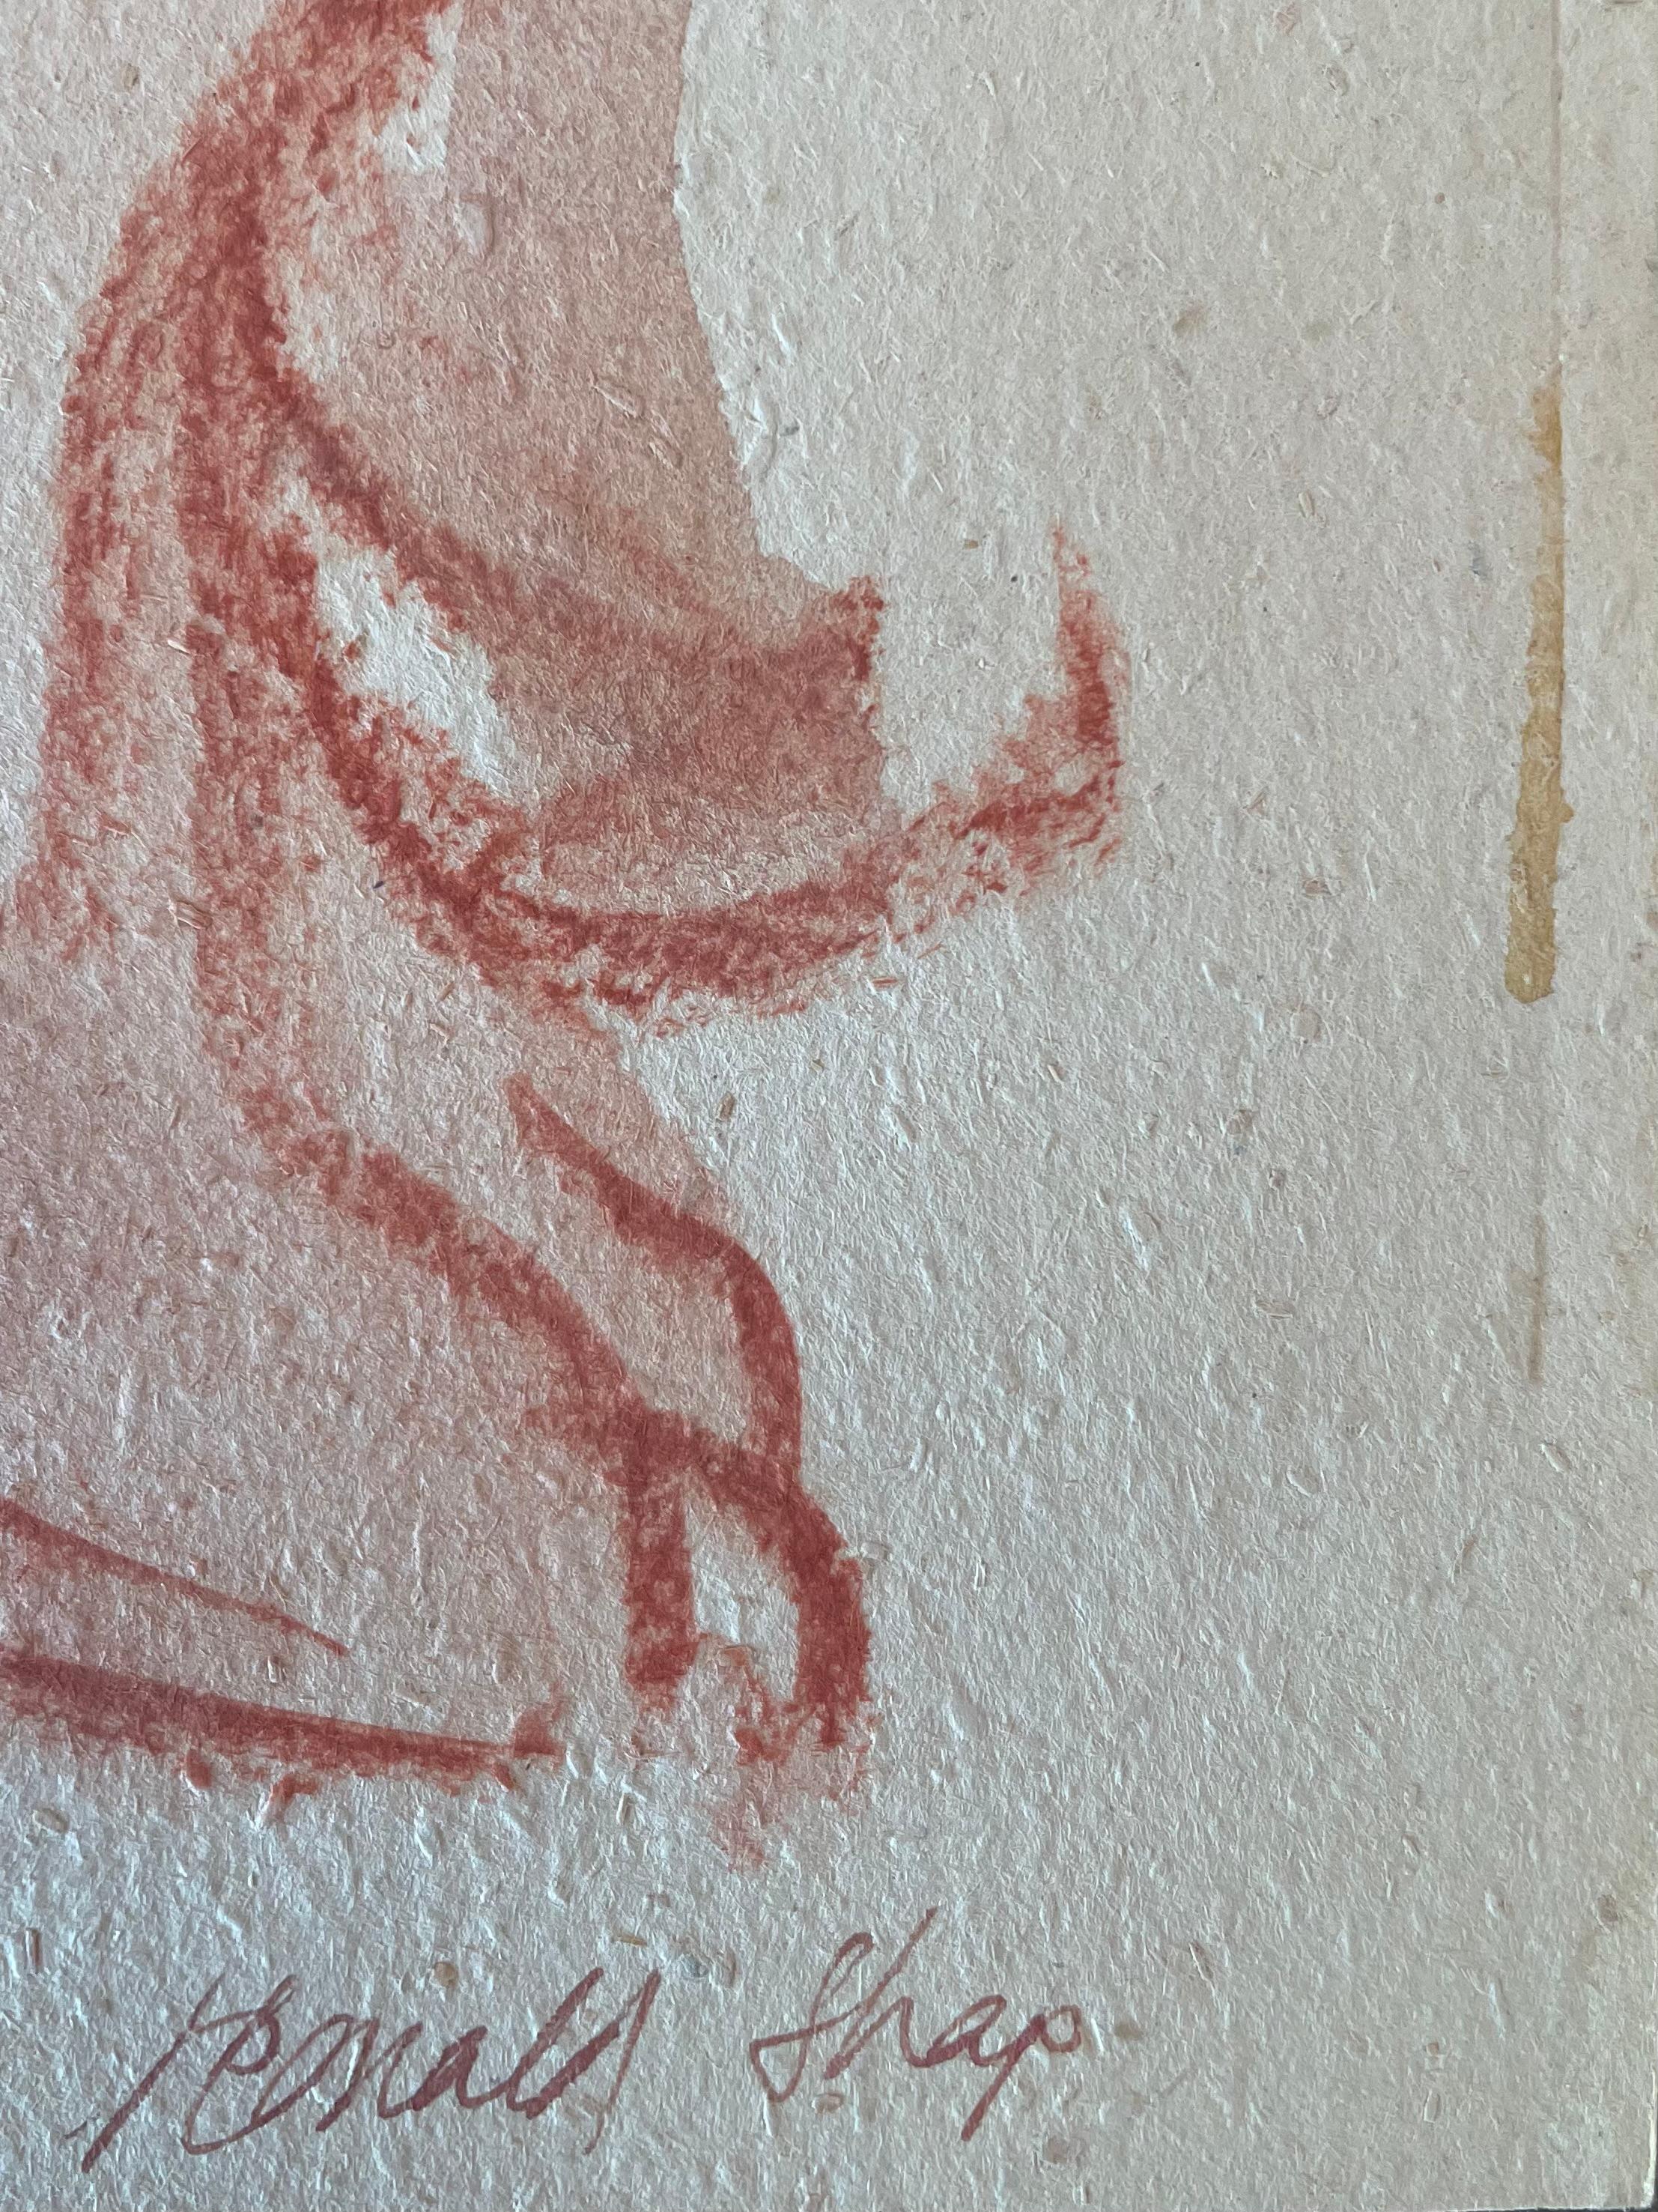 Original Ölpastell und Gouache-Figurenzeichnung des berühmten kalifornischen Landschaftsmalers Ronald Shap aus dem zwanzigsten Jahrhundert. Skizze eines nackten Mannes, der sich vorbeugt. 24x18 Zoll. Unterschrieben.

Einige Farbkleckse an den